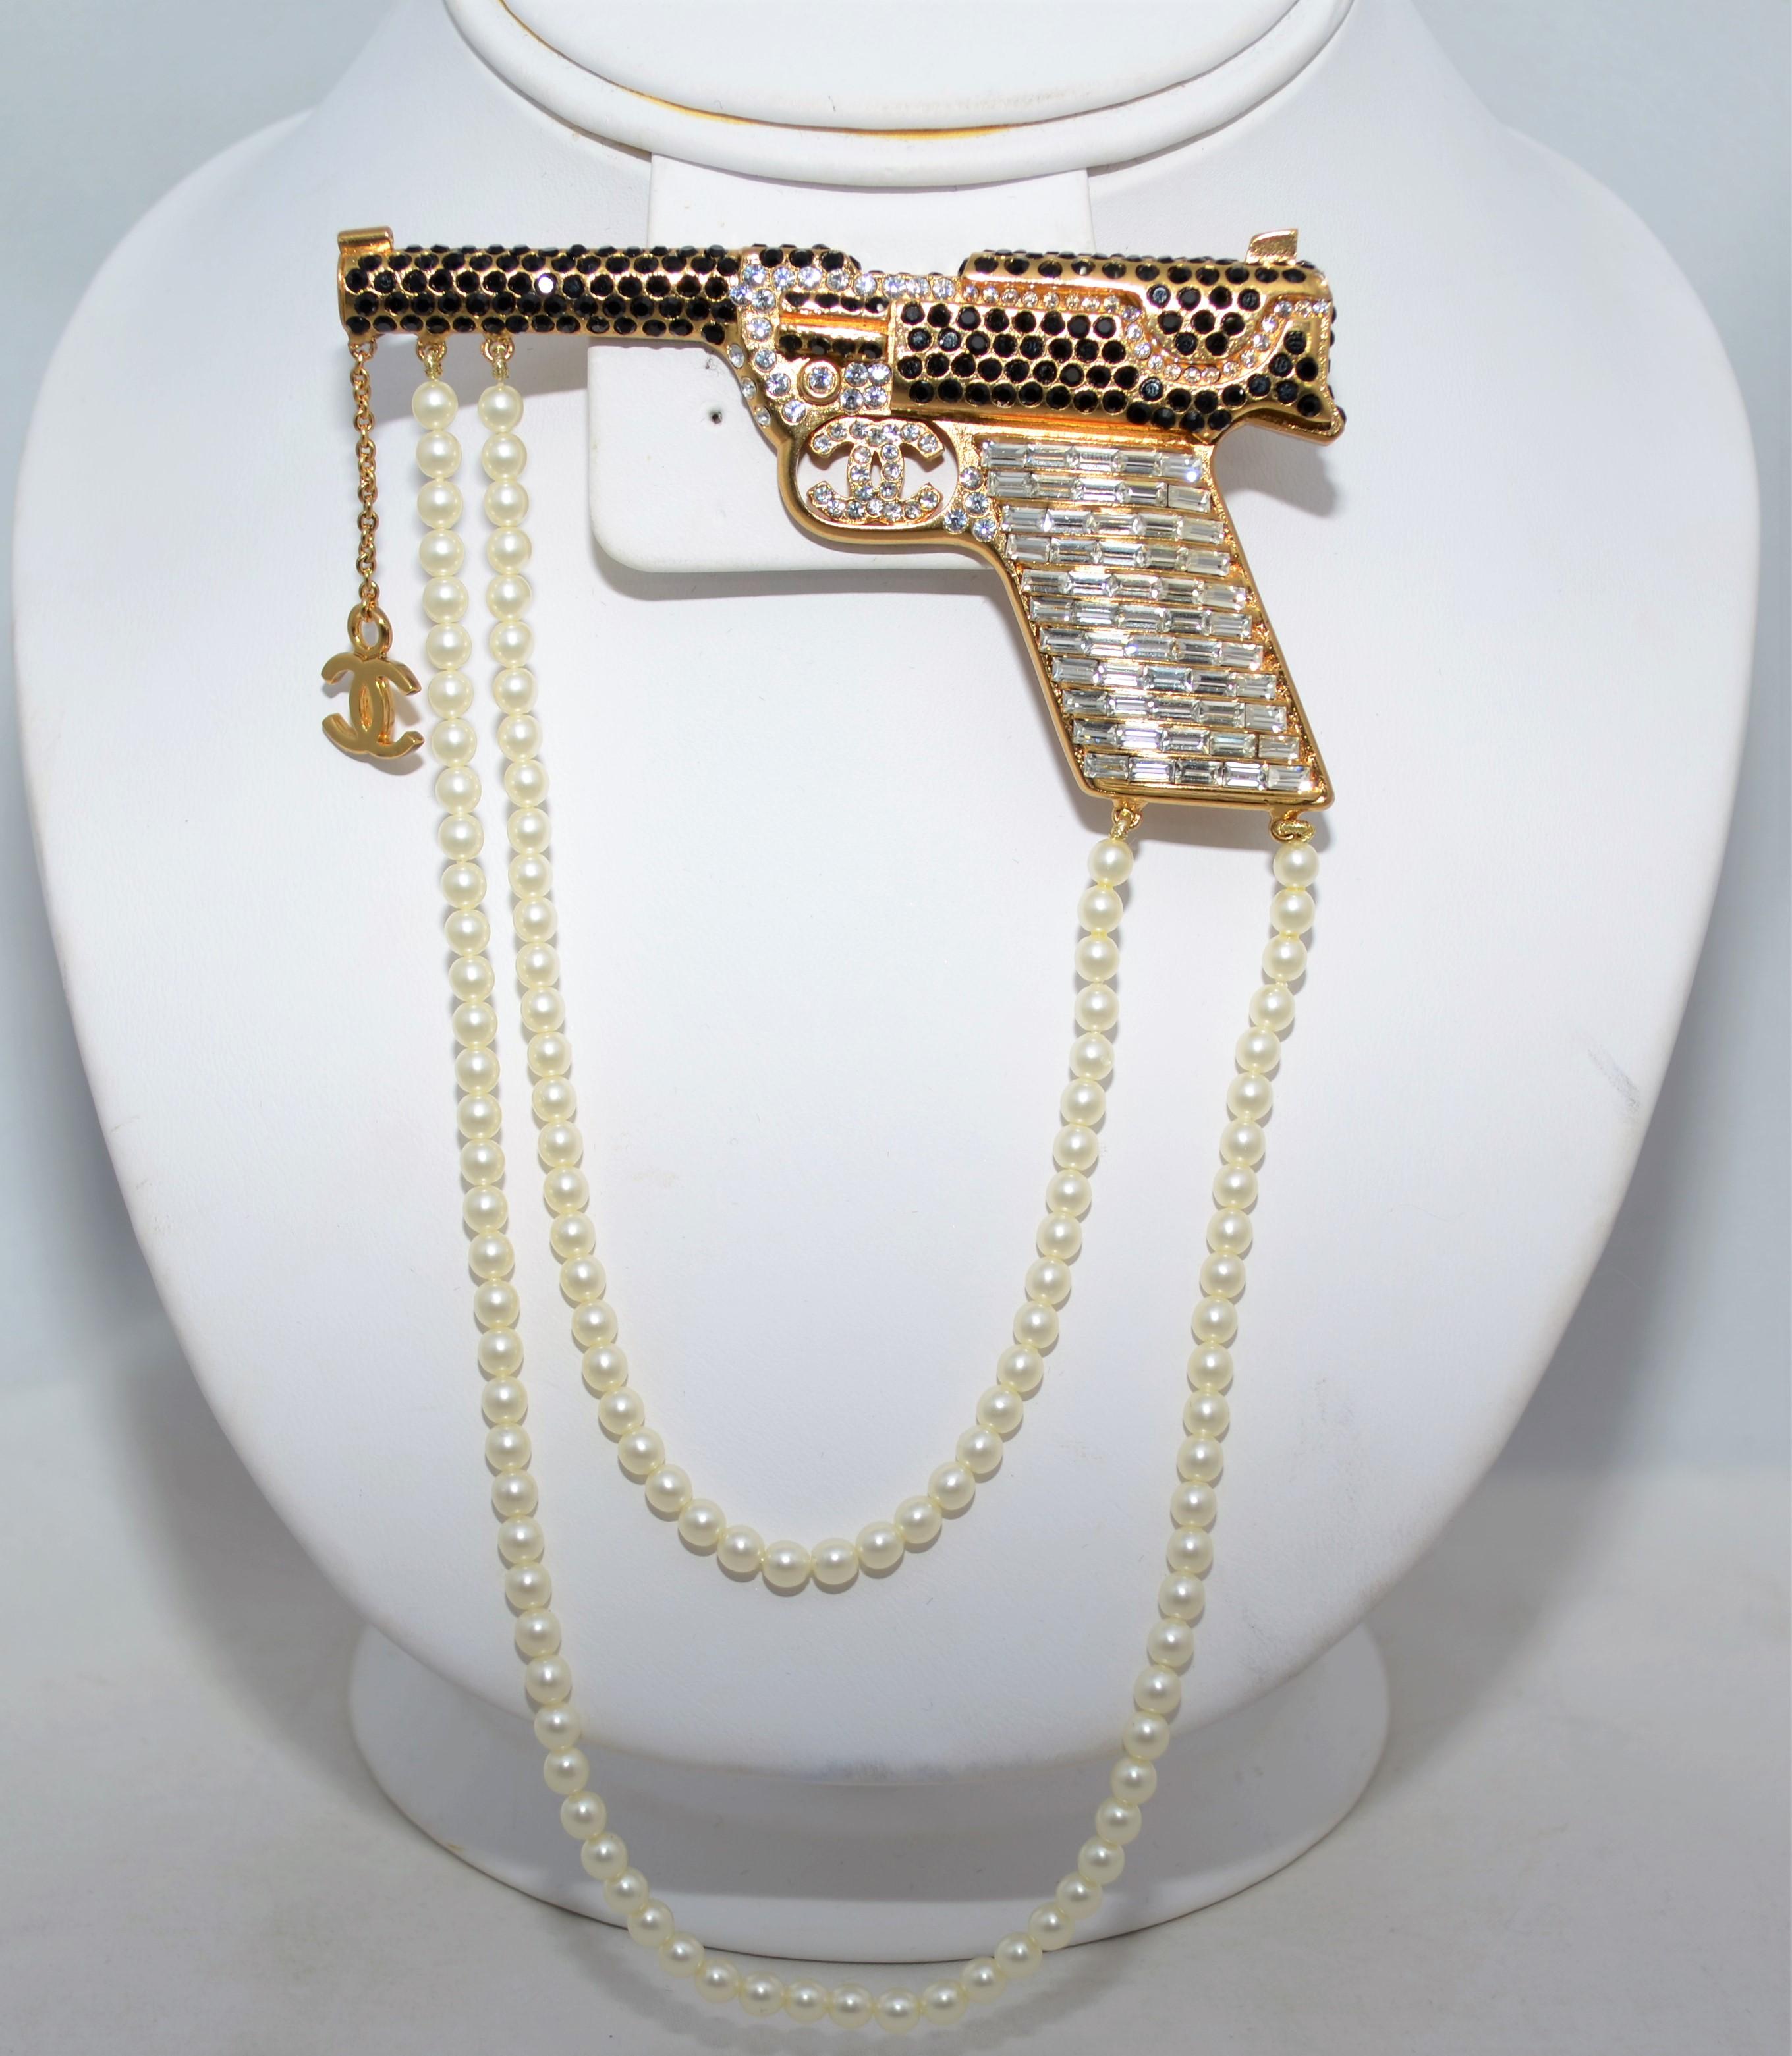 2001 Eine Chanel-Brosche aus goldfarbenem Metall:: durchgehend mit Baguette- und runden Strasssteinen besetzt. Brosche mit zwei Reihen drapierter Perlen. Hergestellt in Frankreich. 

Abmessungen: 
3.5'' lang
Perlen drapieren 6'' lang